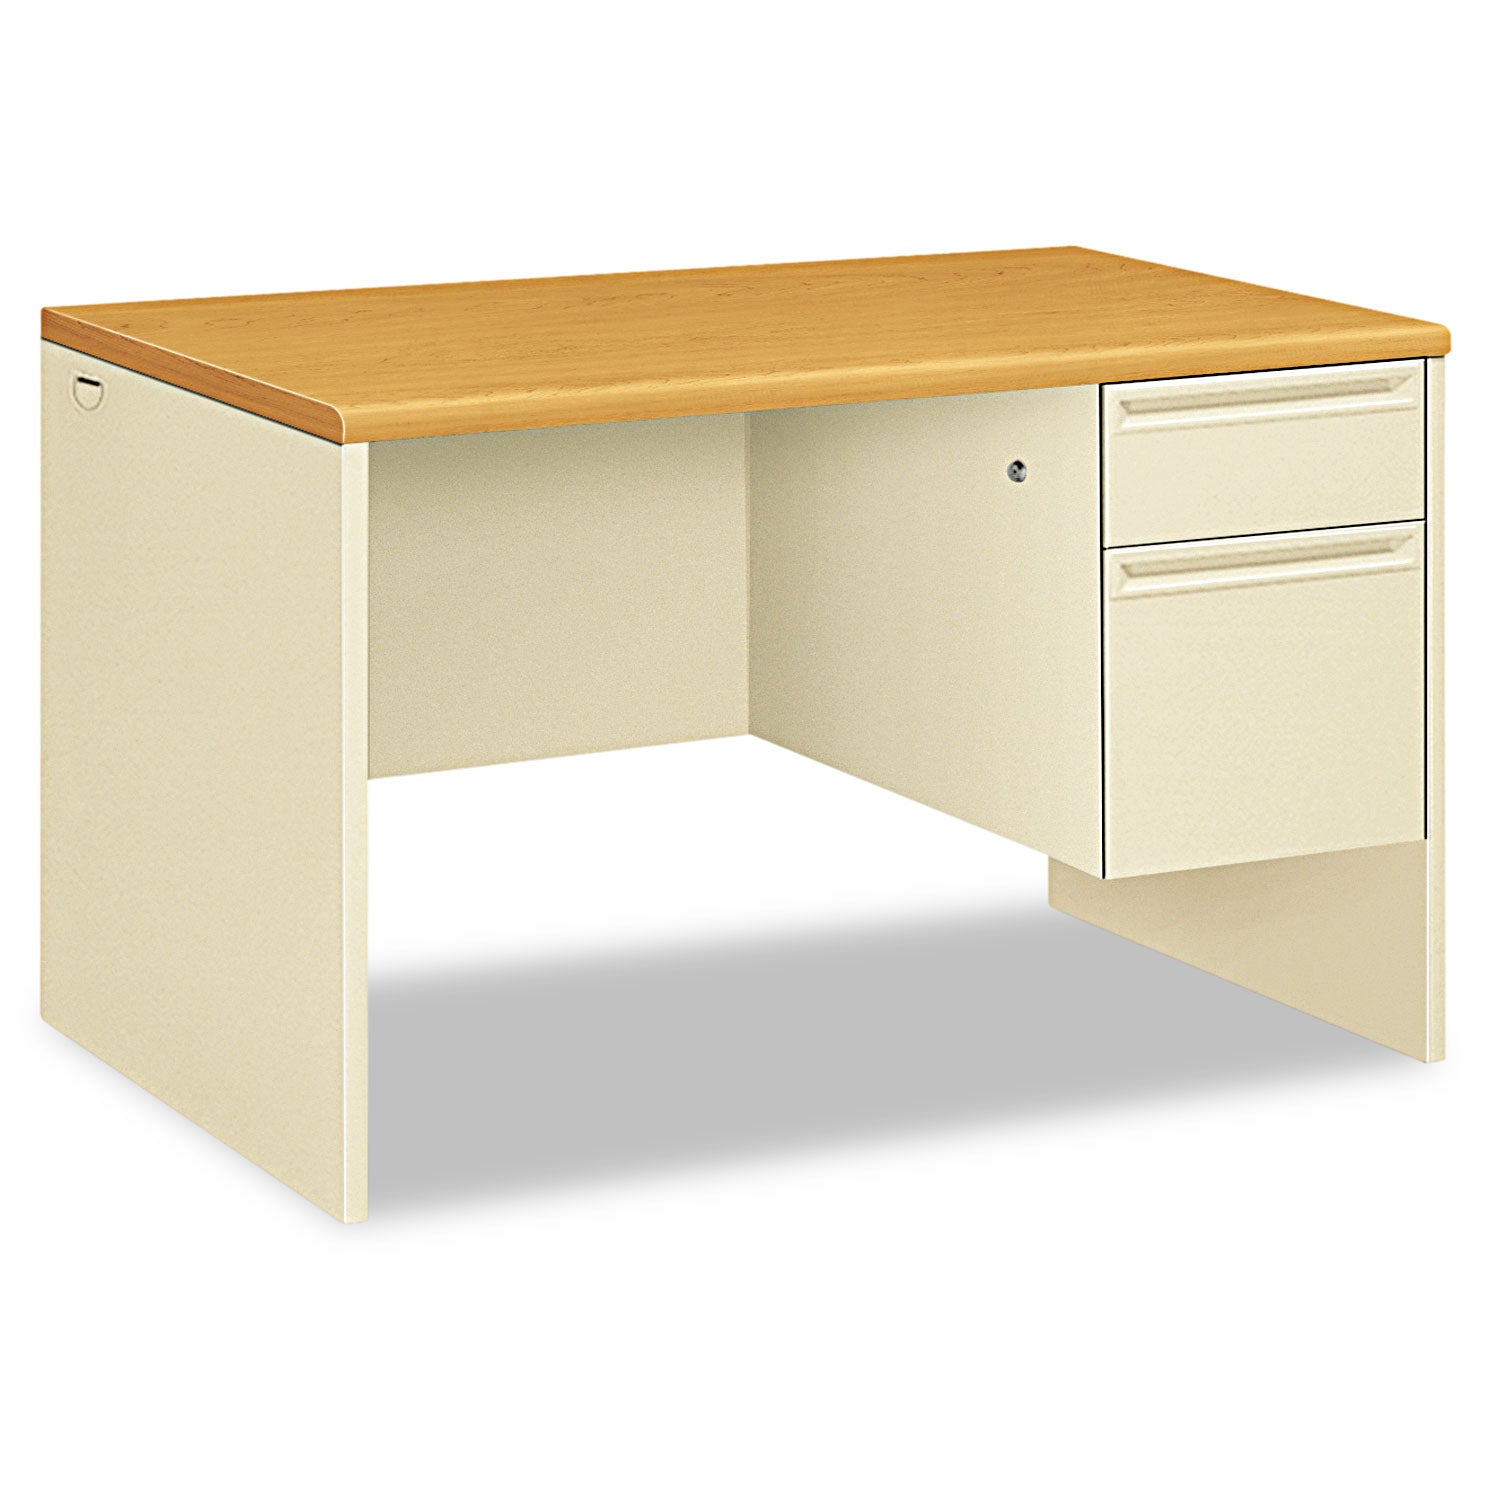 38000 Series Right Pedestal Desk, 48" x 30" x 29.5", Harvest/Putty - 